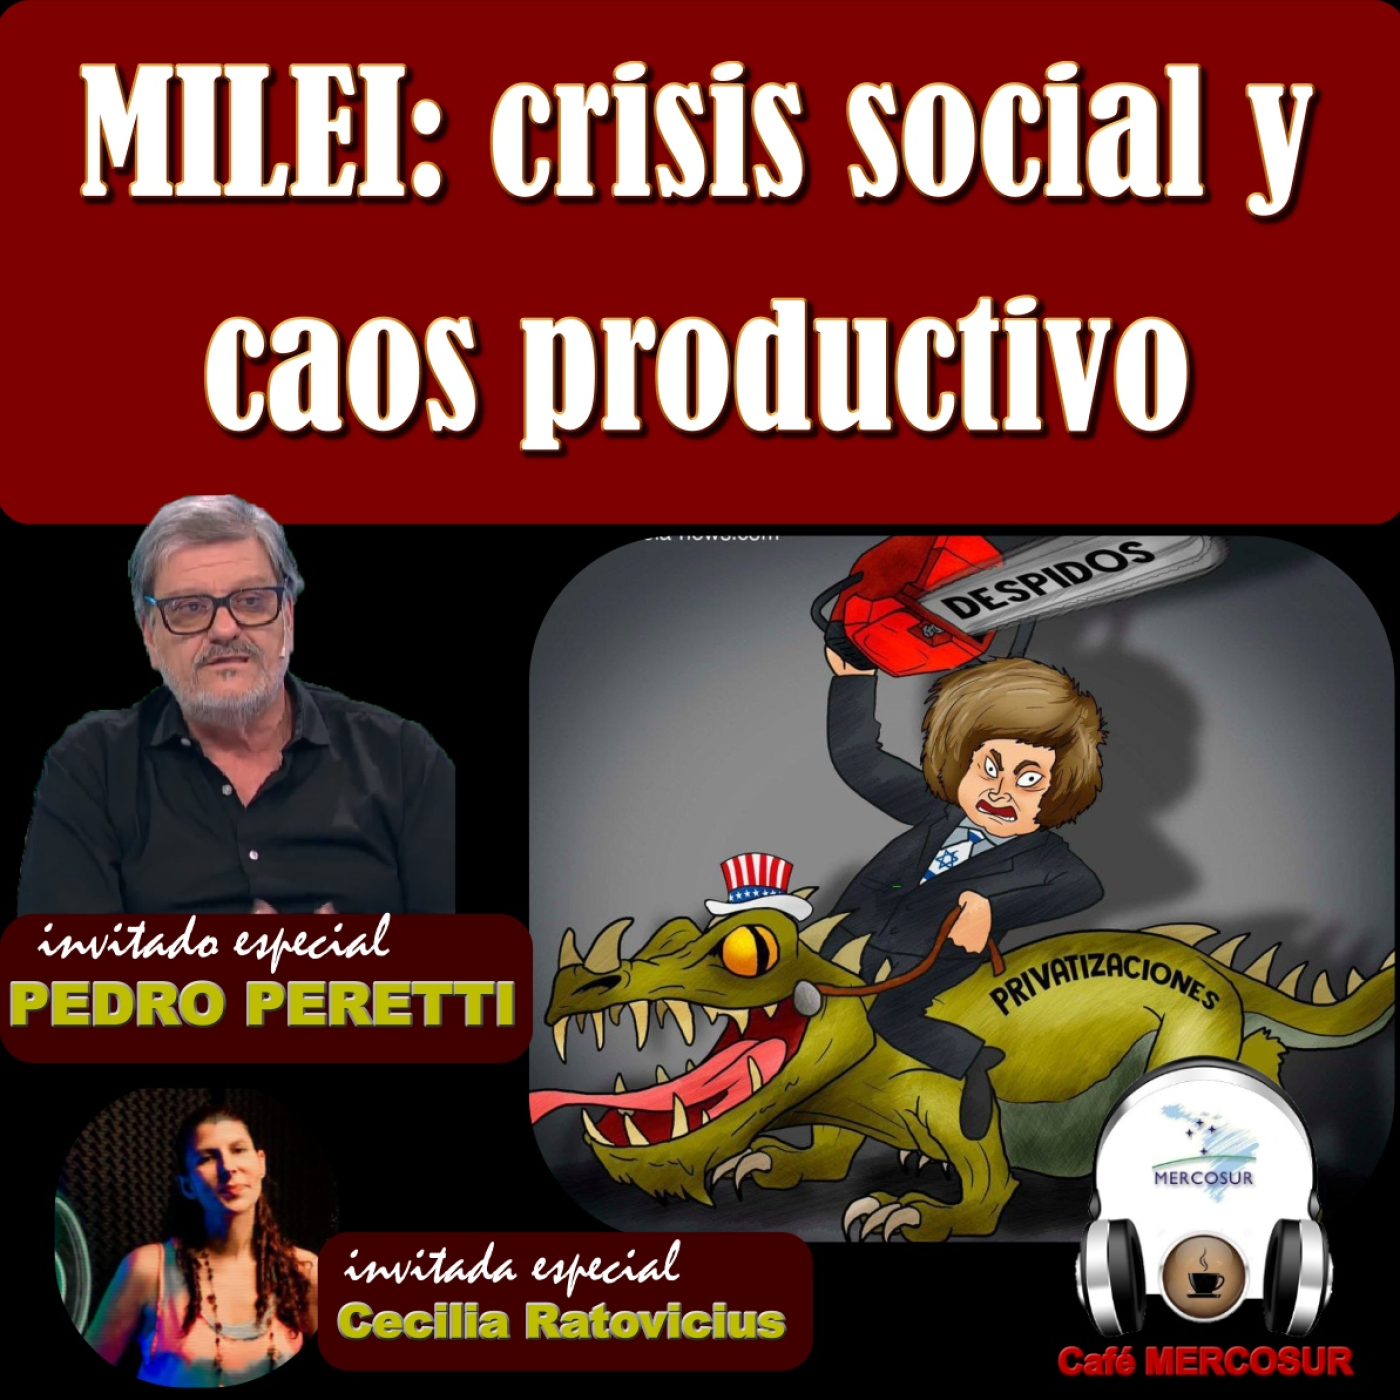 Milei: crisis social y caos productivo